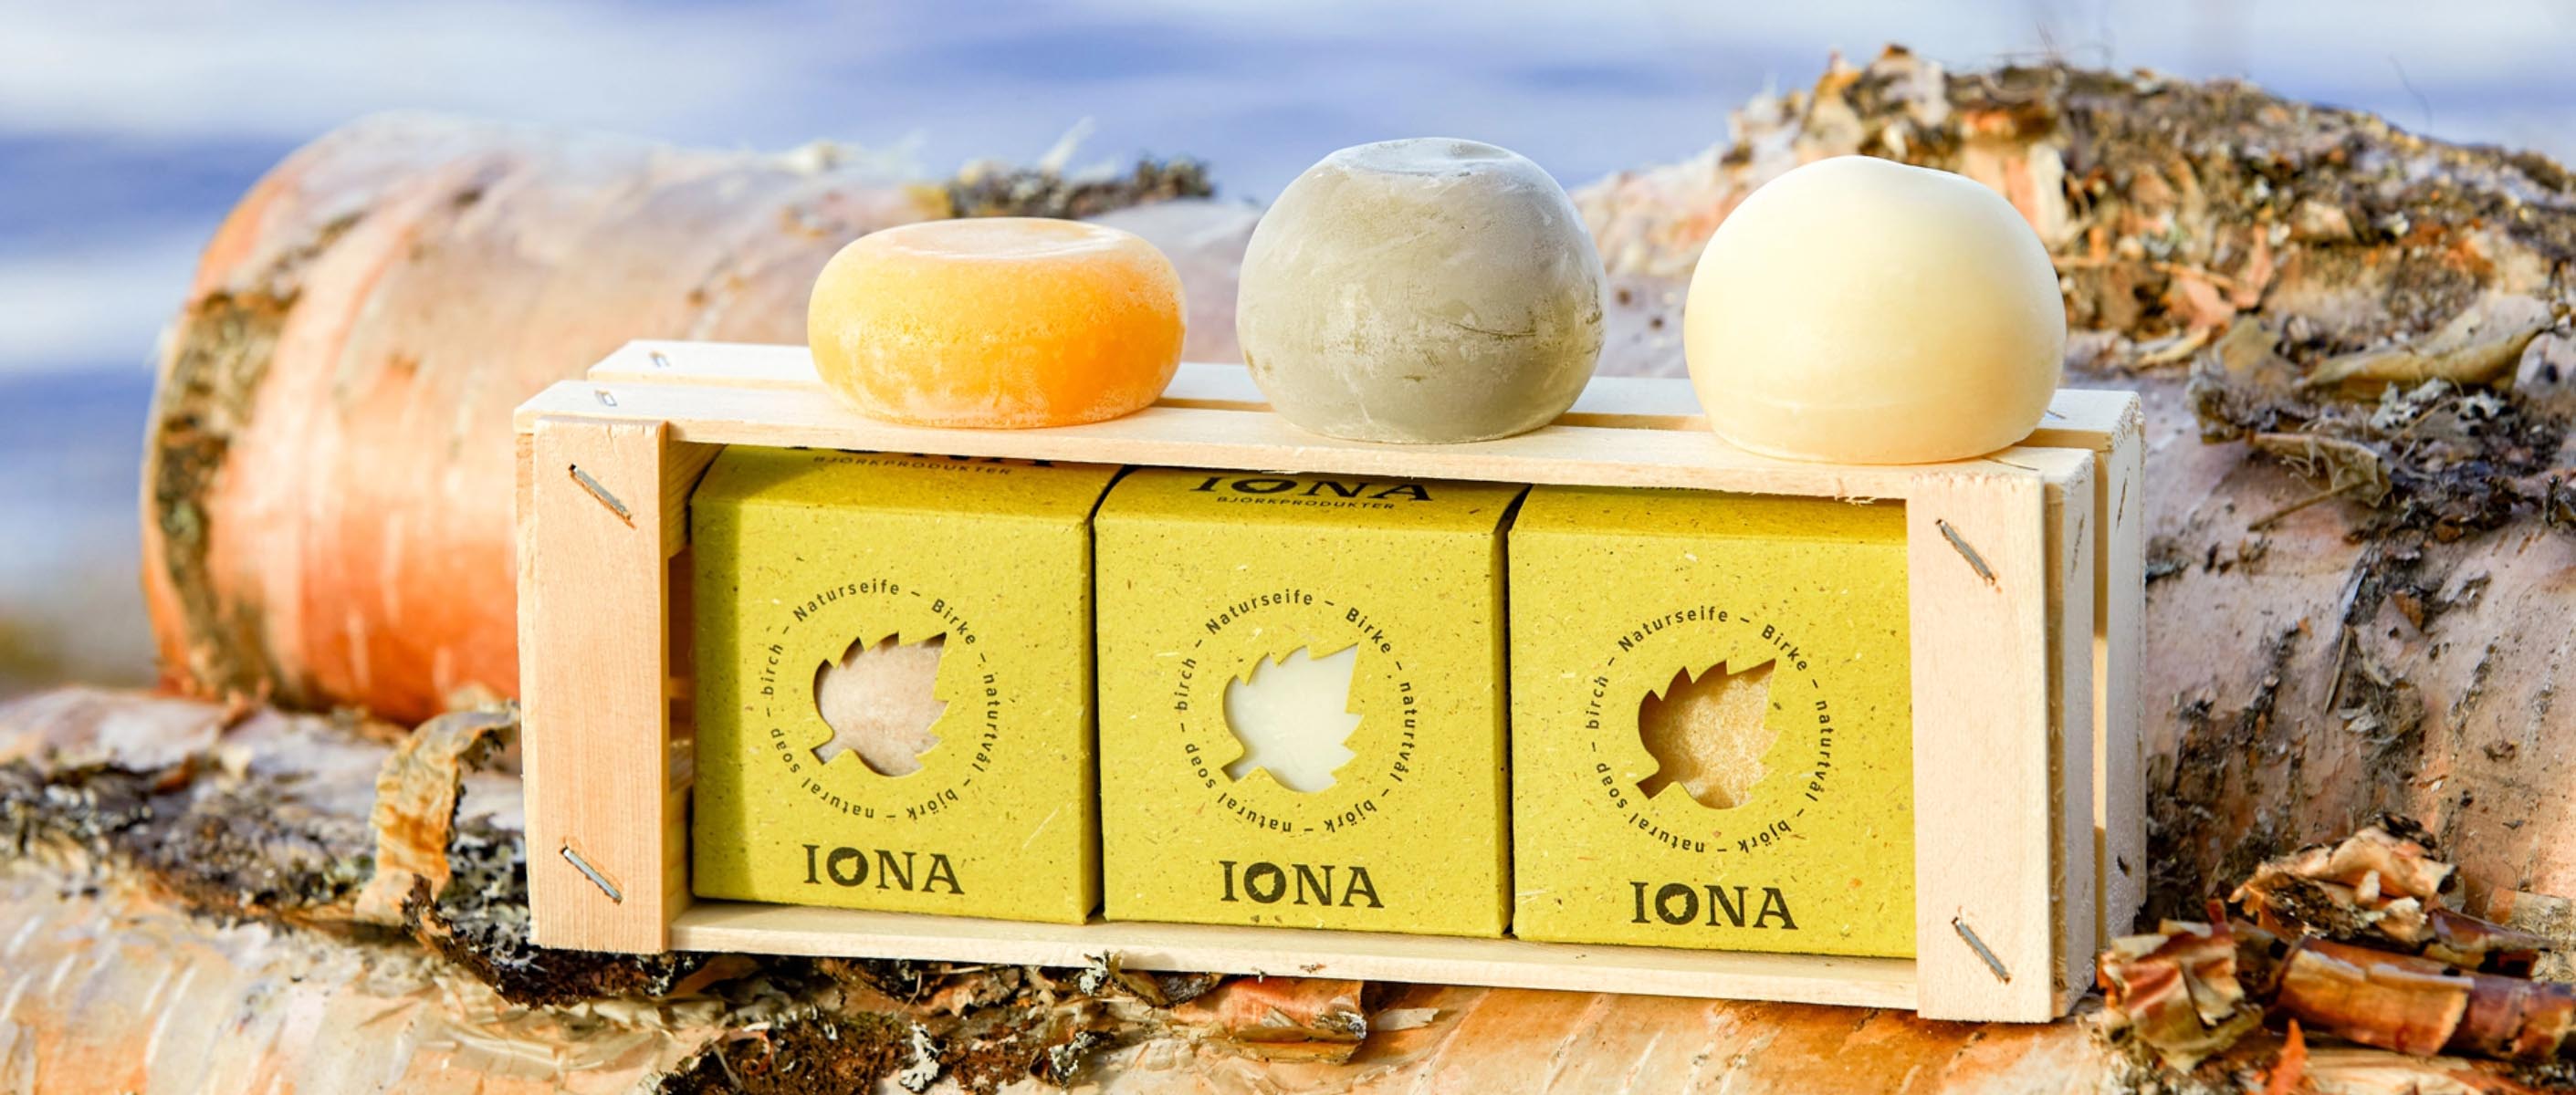 Werbeagentur Packaging design Iona